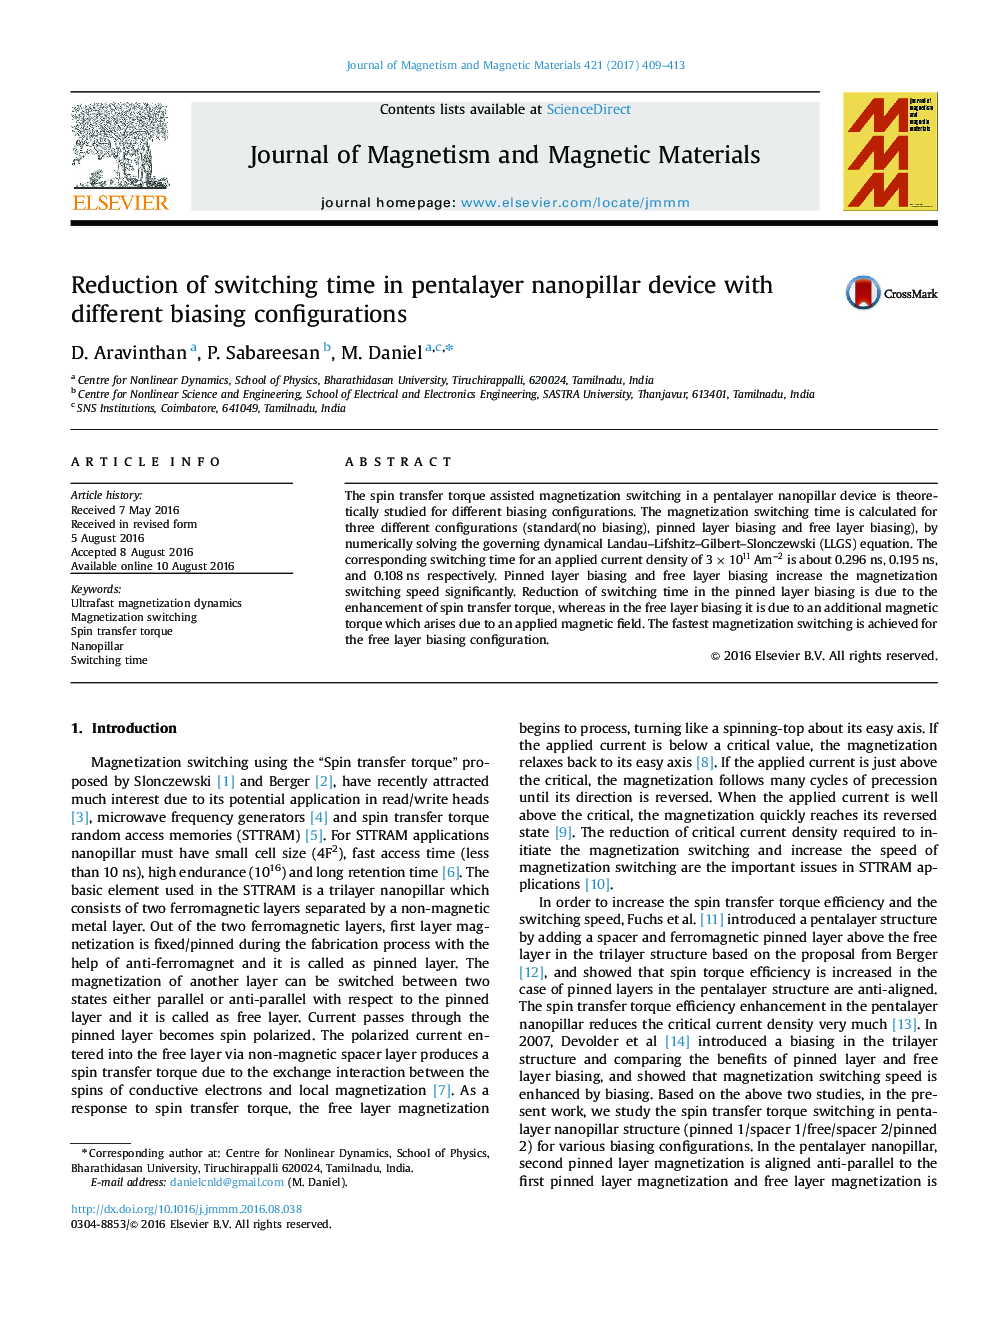 کاهش زمان تعویض در دستگاه pentalayer nanopillar با تنظیمات بایاسینگ مختلف